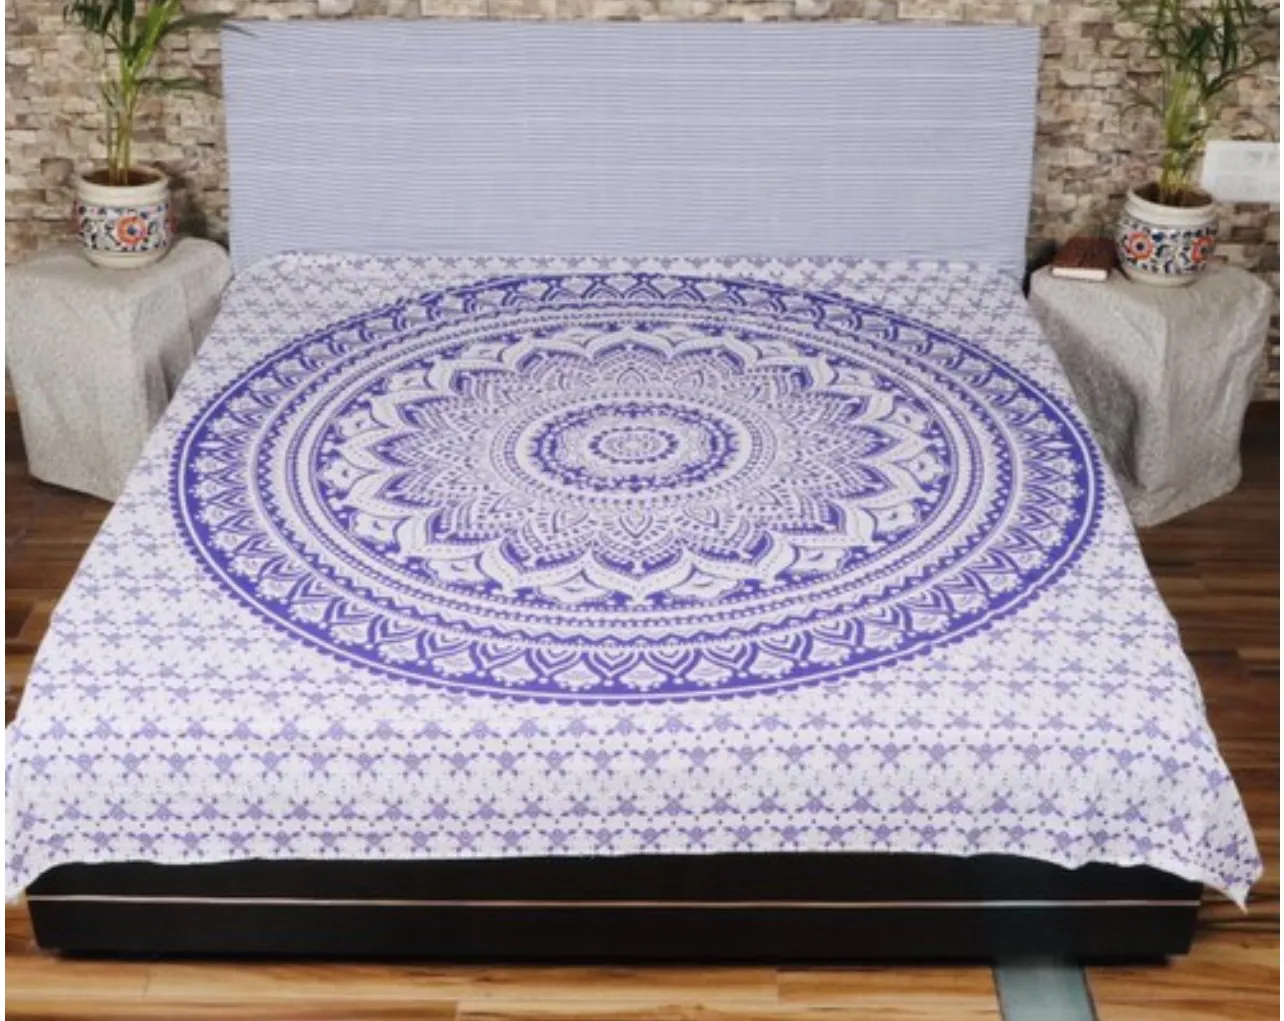 Lençol de cama estampado floral, lençol de cama respirável e sem rugas com 2 travesseiros, capas clássicas de alta qualidade e acabamento artesanal